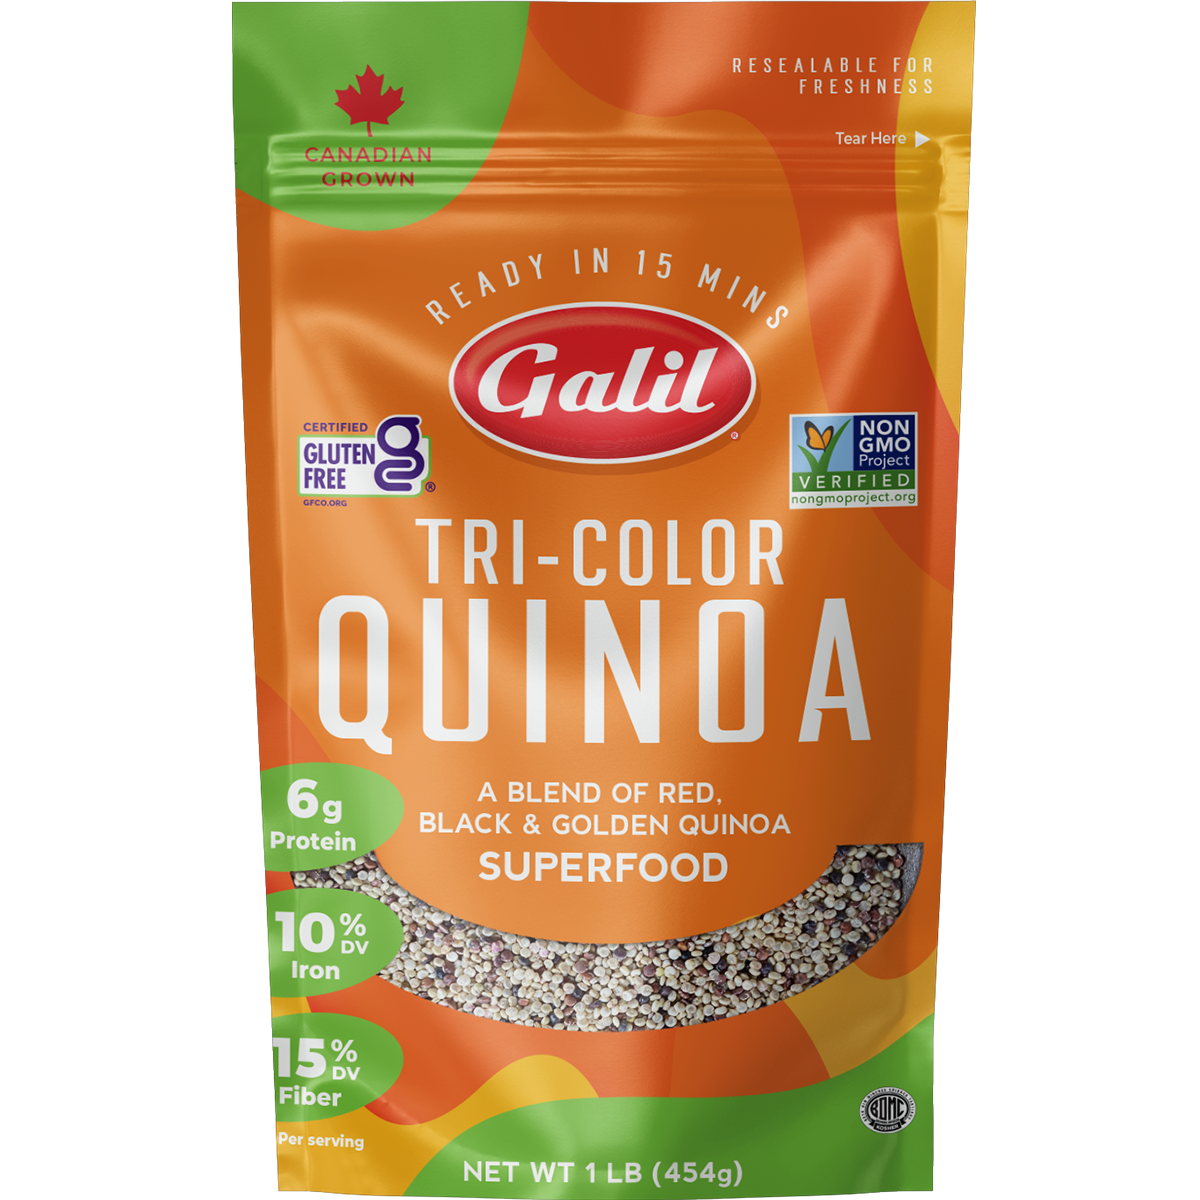 Tri-Color Quinoa | 16 oz | Galil